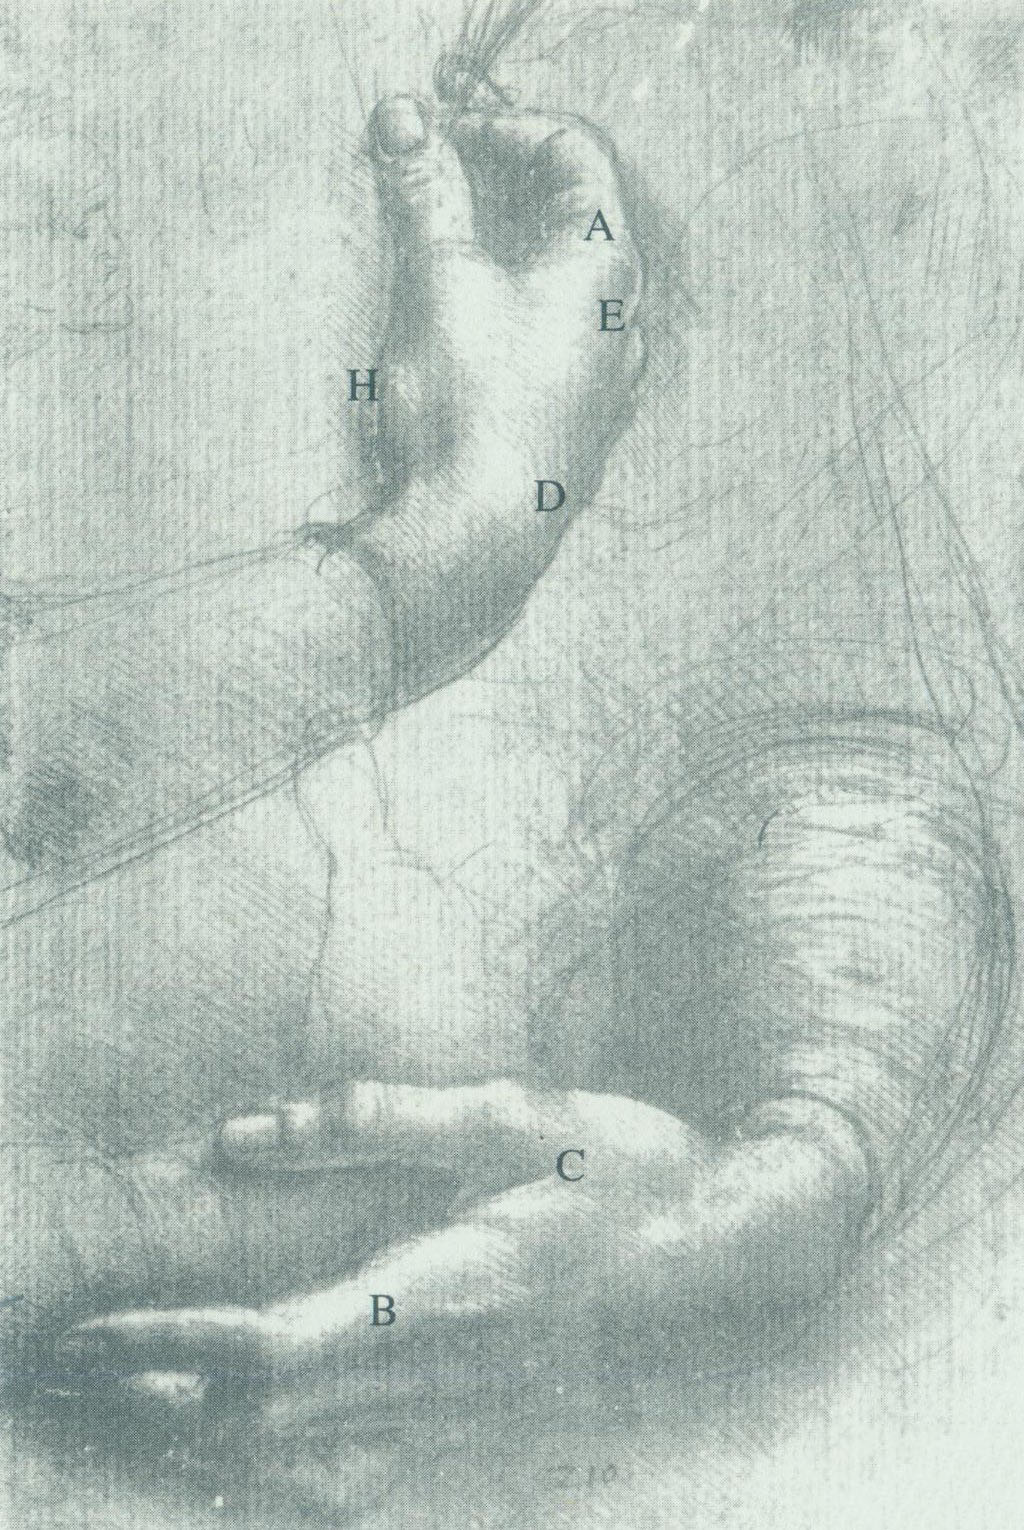 达芬奇素描《手习作》结构示意图